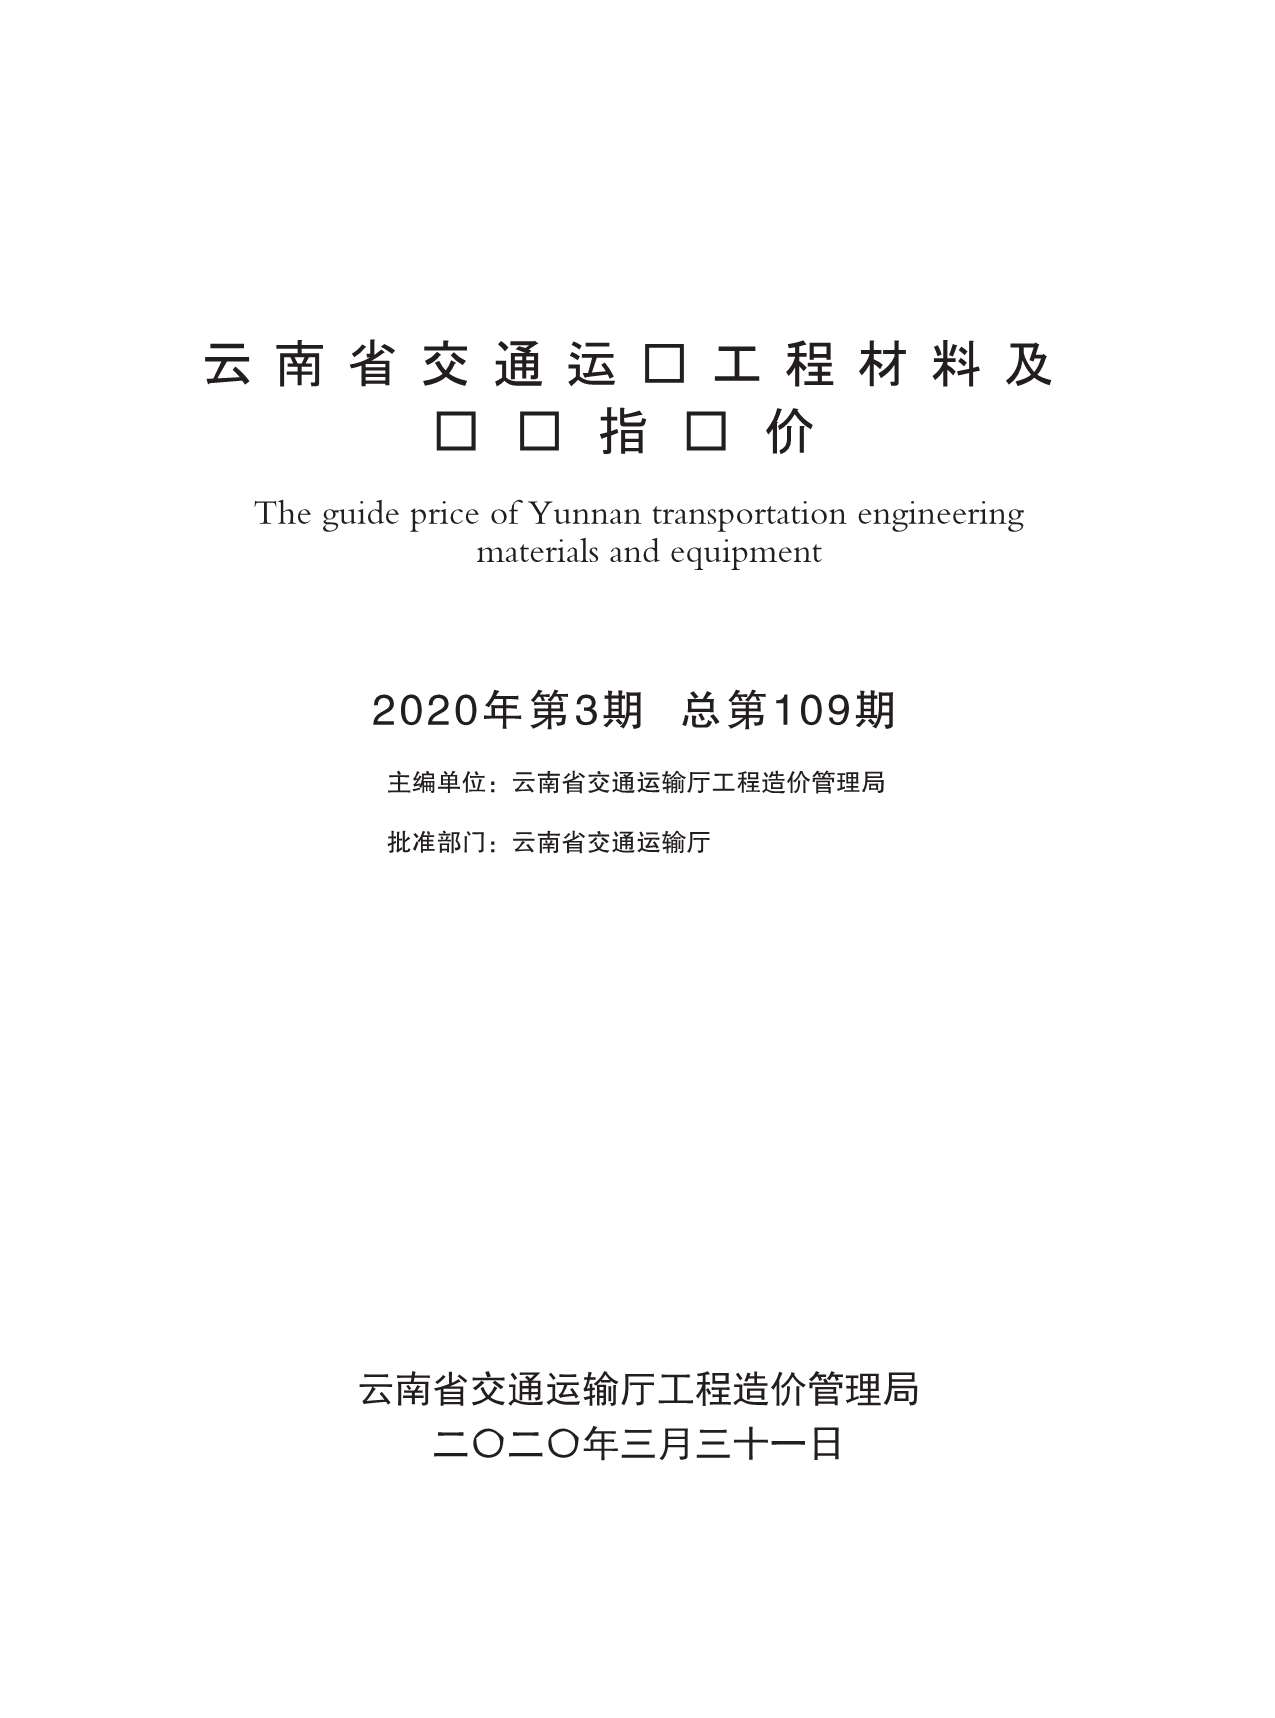 2020年3期云南交通信息价造价库信息价